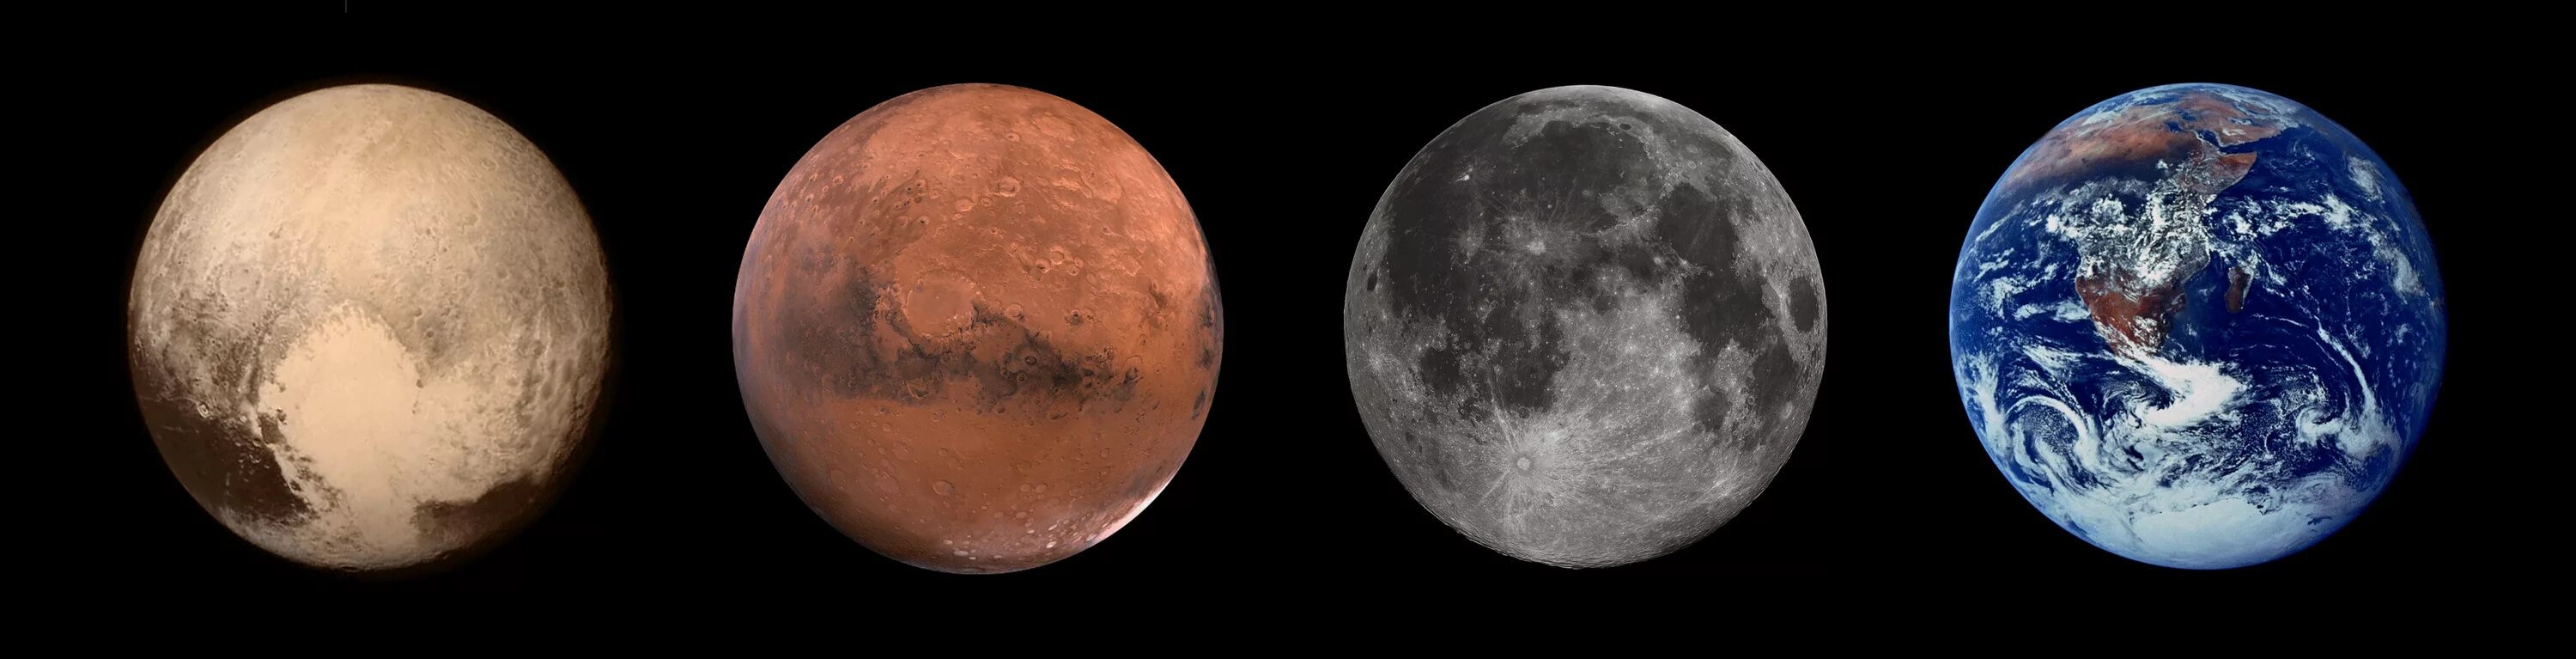 Планеты Плутон и Марс. Марс Луна Плутон. Плутон и Марс фото. Марс плутон в домах